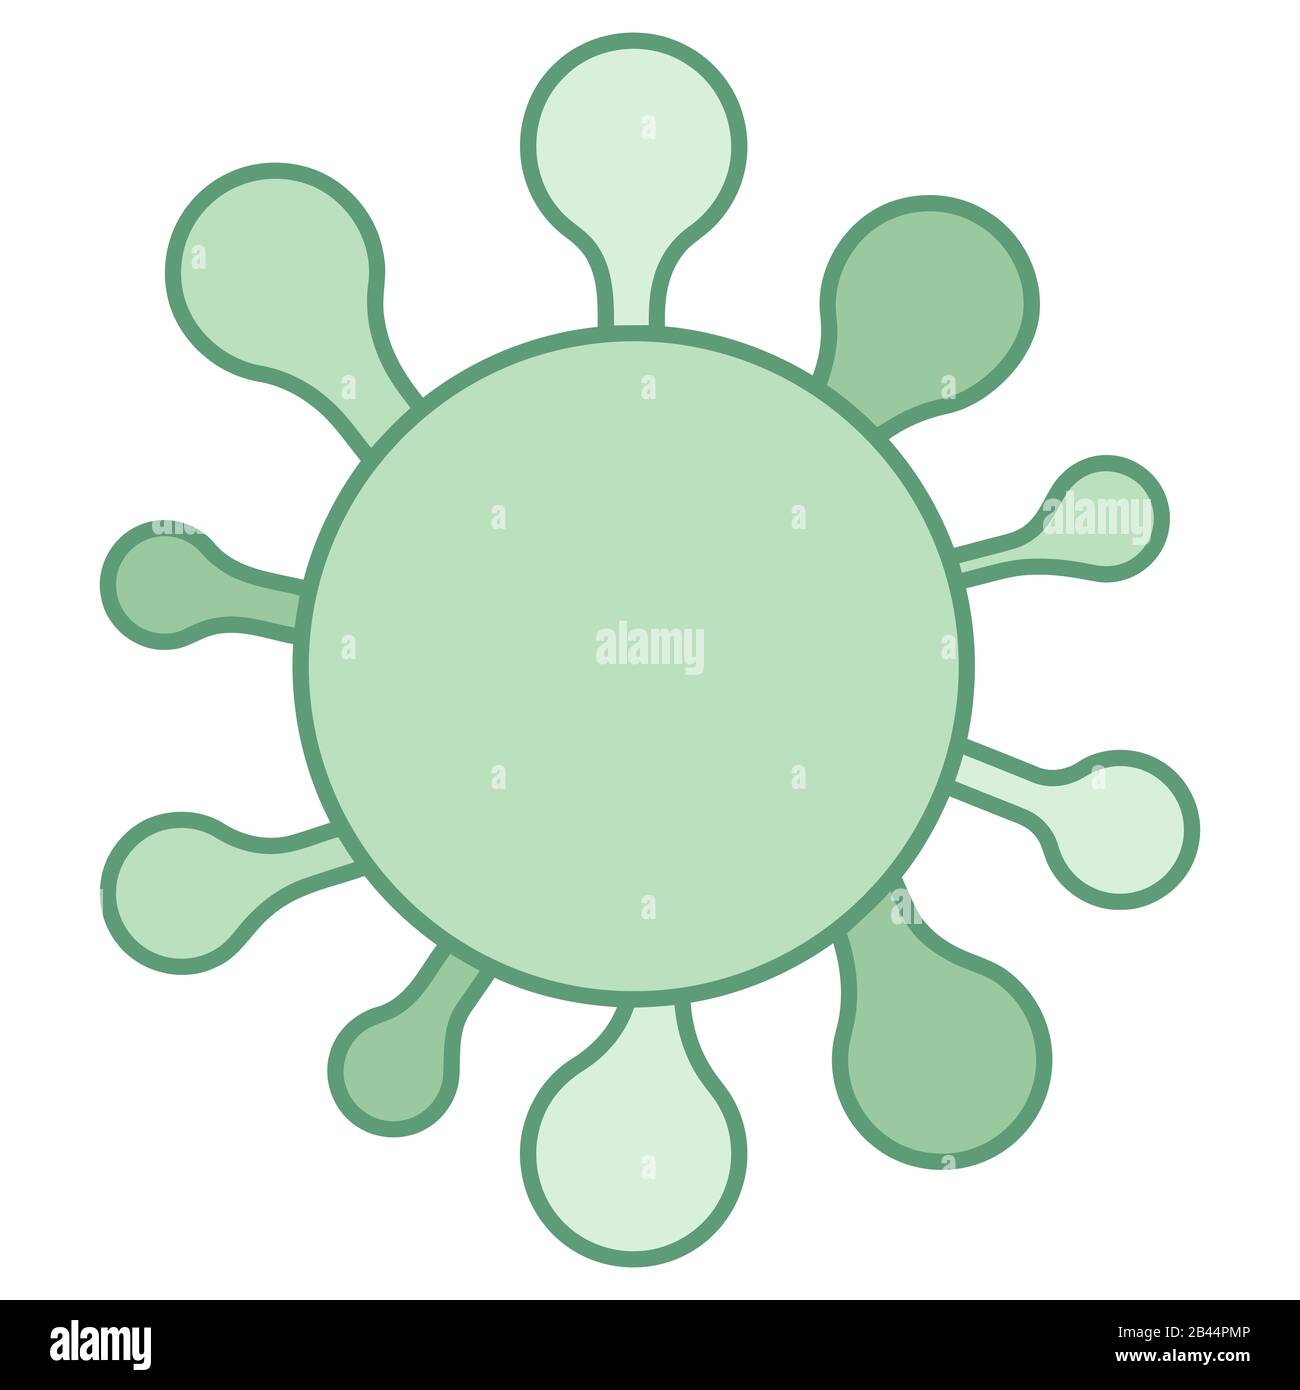 corona virus polmonite verde infezione virale illustrazione medica Foto Stock